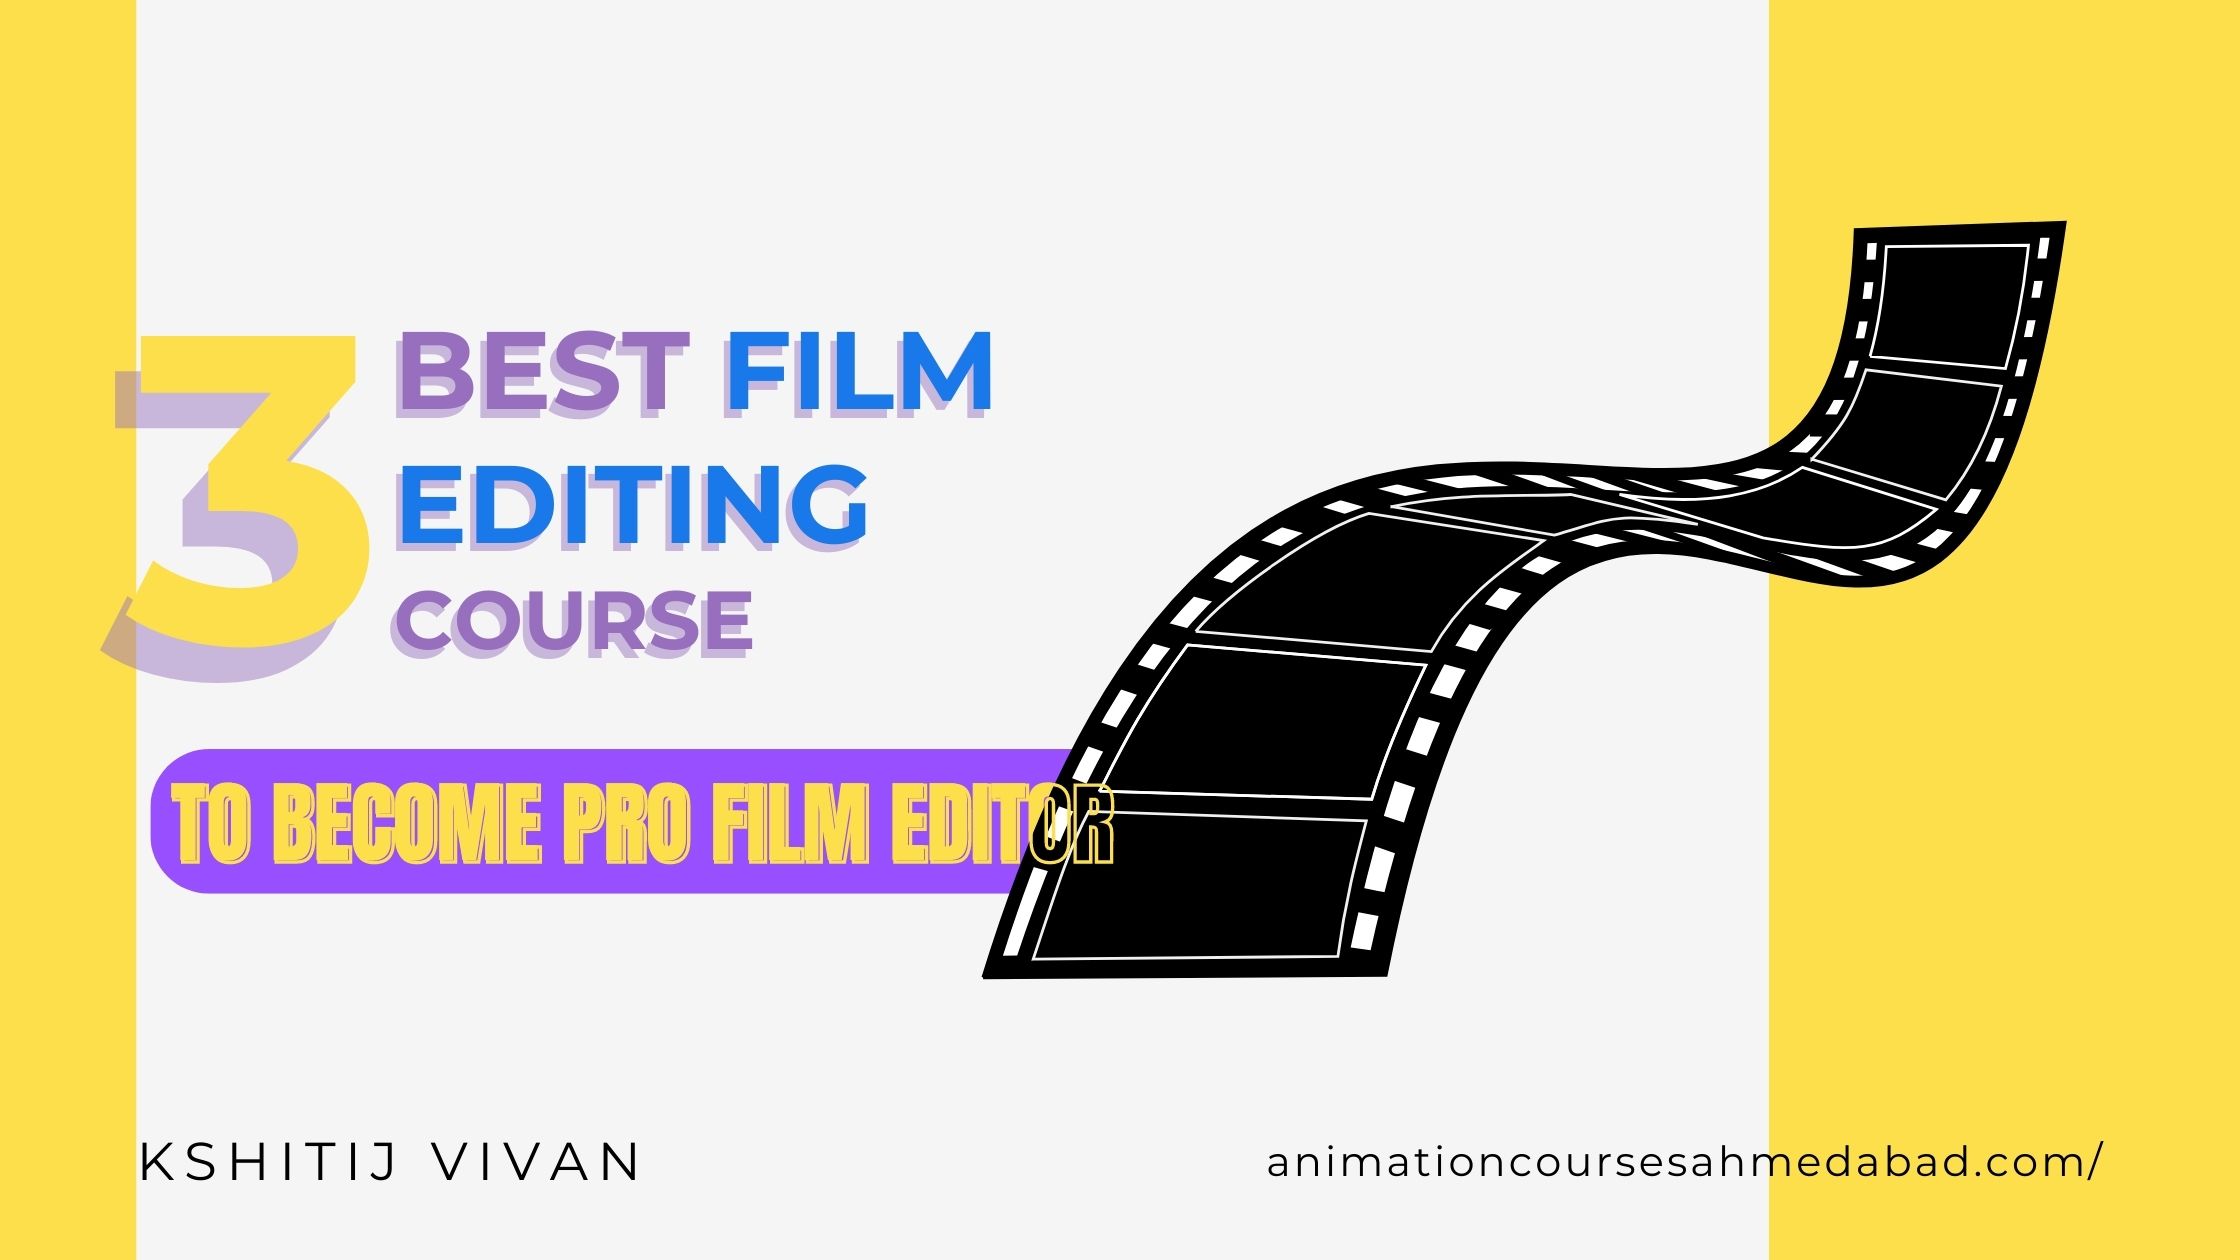 Best 3 Film Editing Courses in India